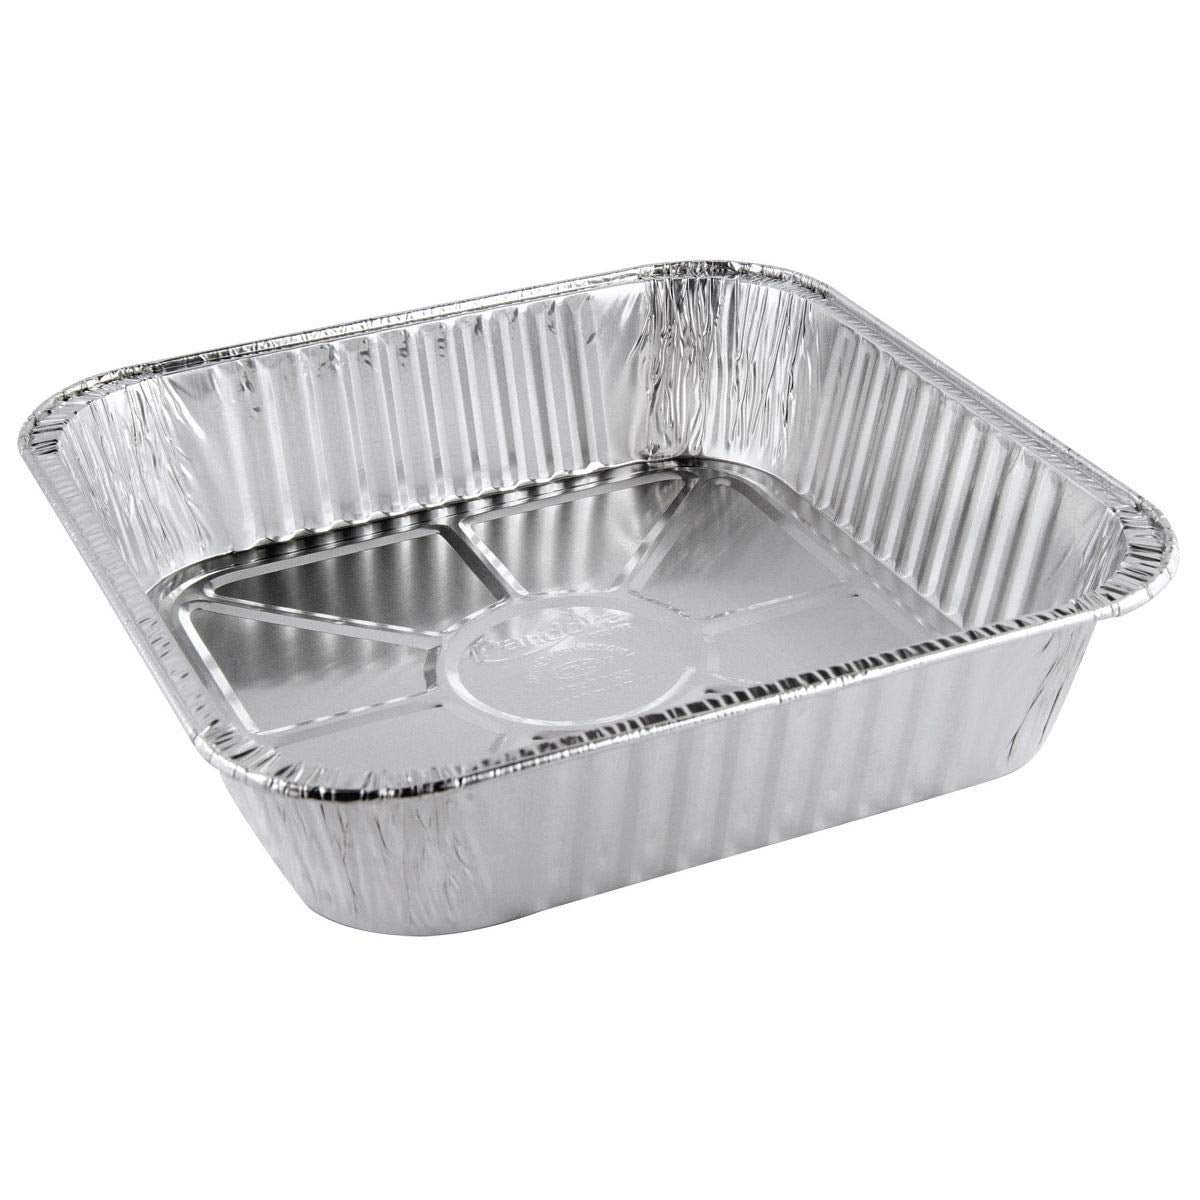 Handi-Foil Square Aluminum Foil Cake Pan Disposable Baking Tin REF# 308 10